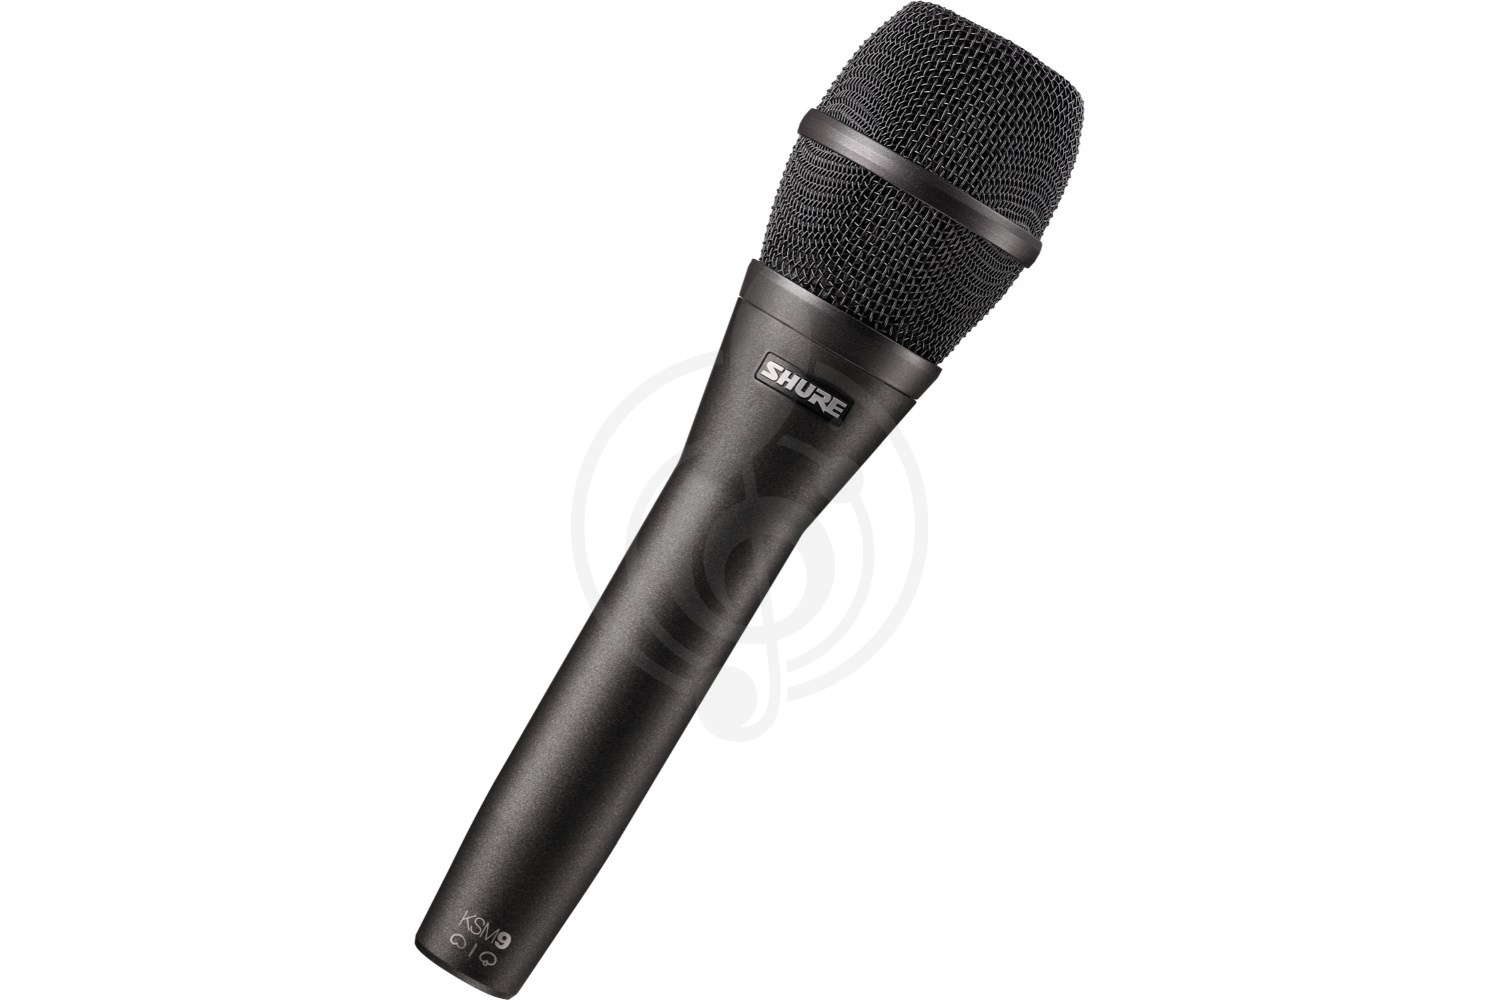 Конденсаторный вокальный микрофон Конденсаторные вокальные микрофоны Shure Shure KSM9/CG - конденсаторный вокальный микрофон KSM9/CG - фото 1